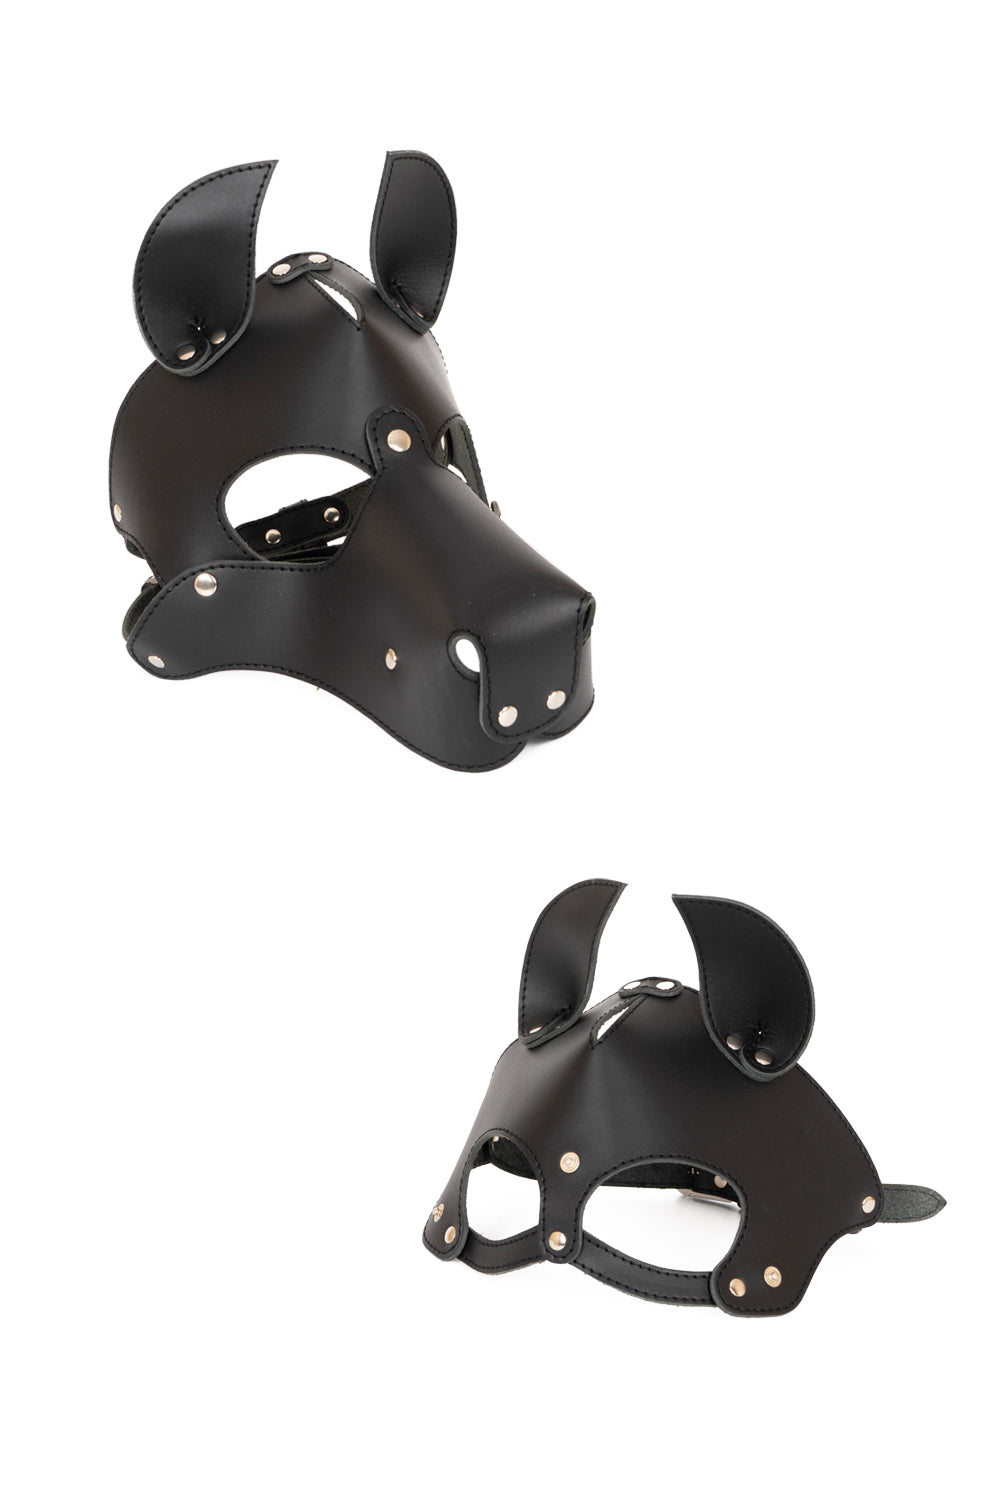 Dog mask with detachable muzzle. White